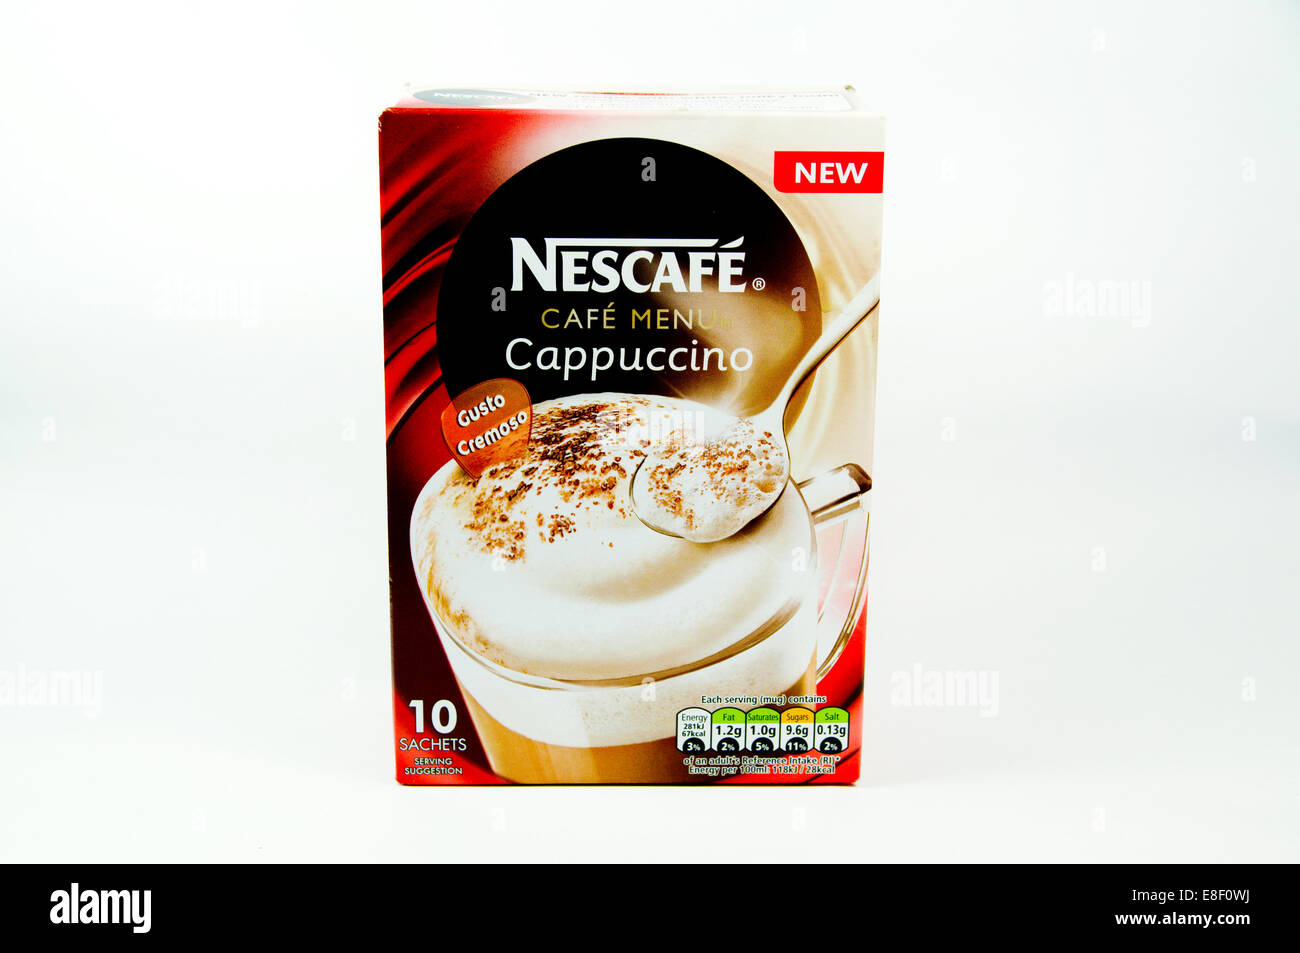 Nescafe Cappuccino coffee Stock Photo